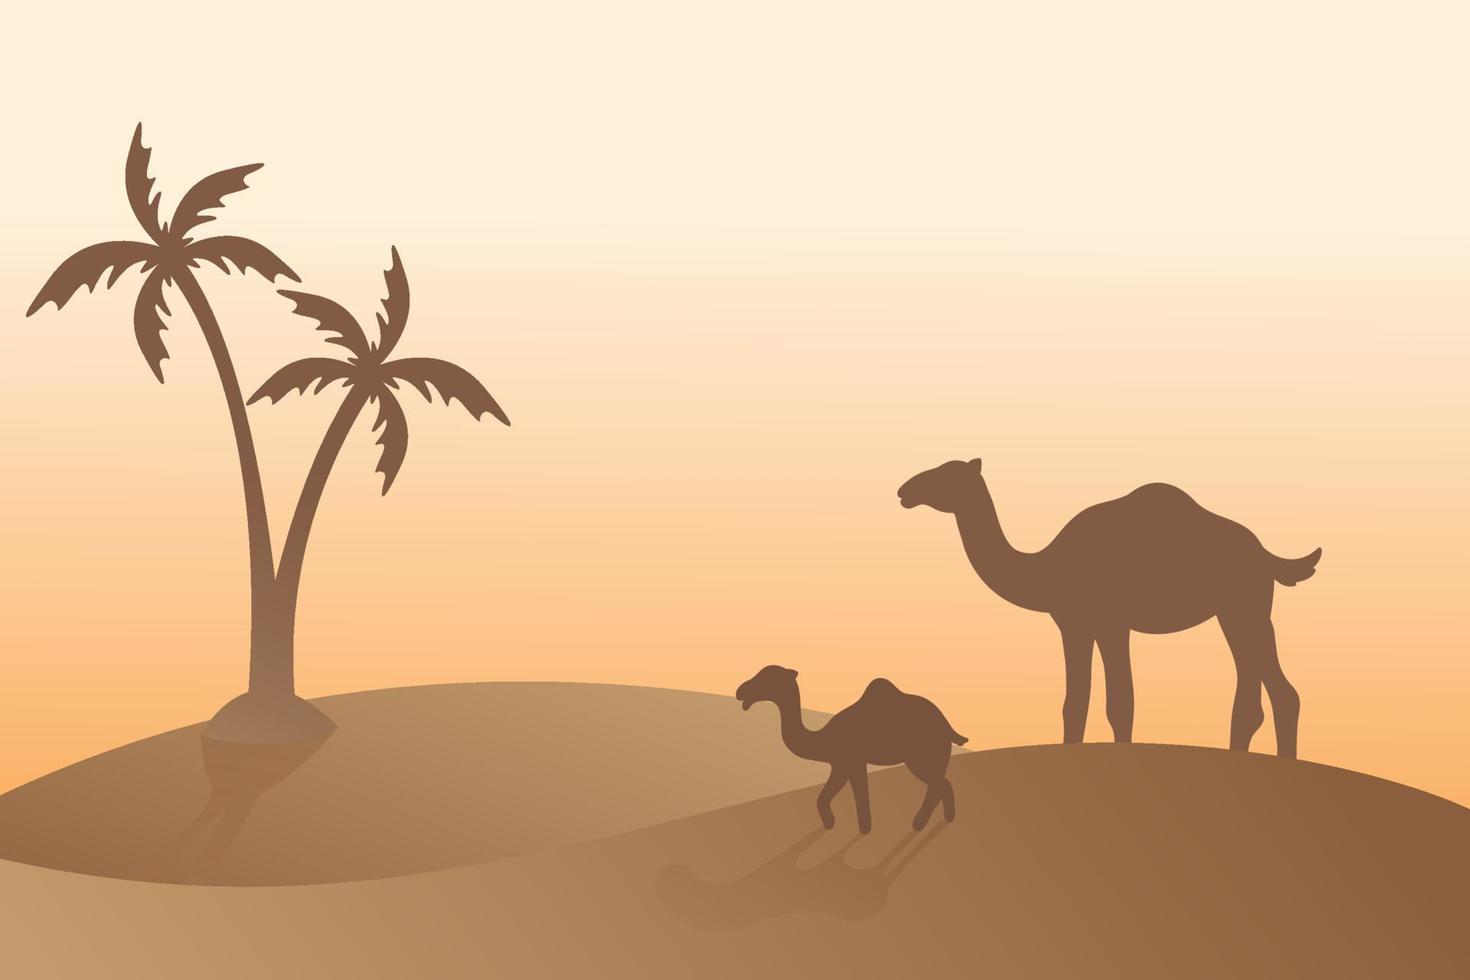 arabesque camel silhouette background vector, sunlight, desert sand, islamic religion holiday vector